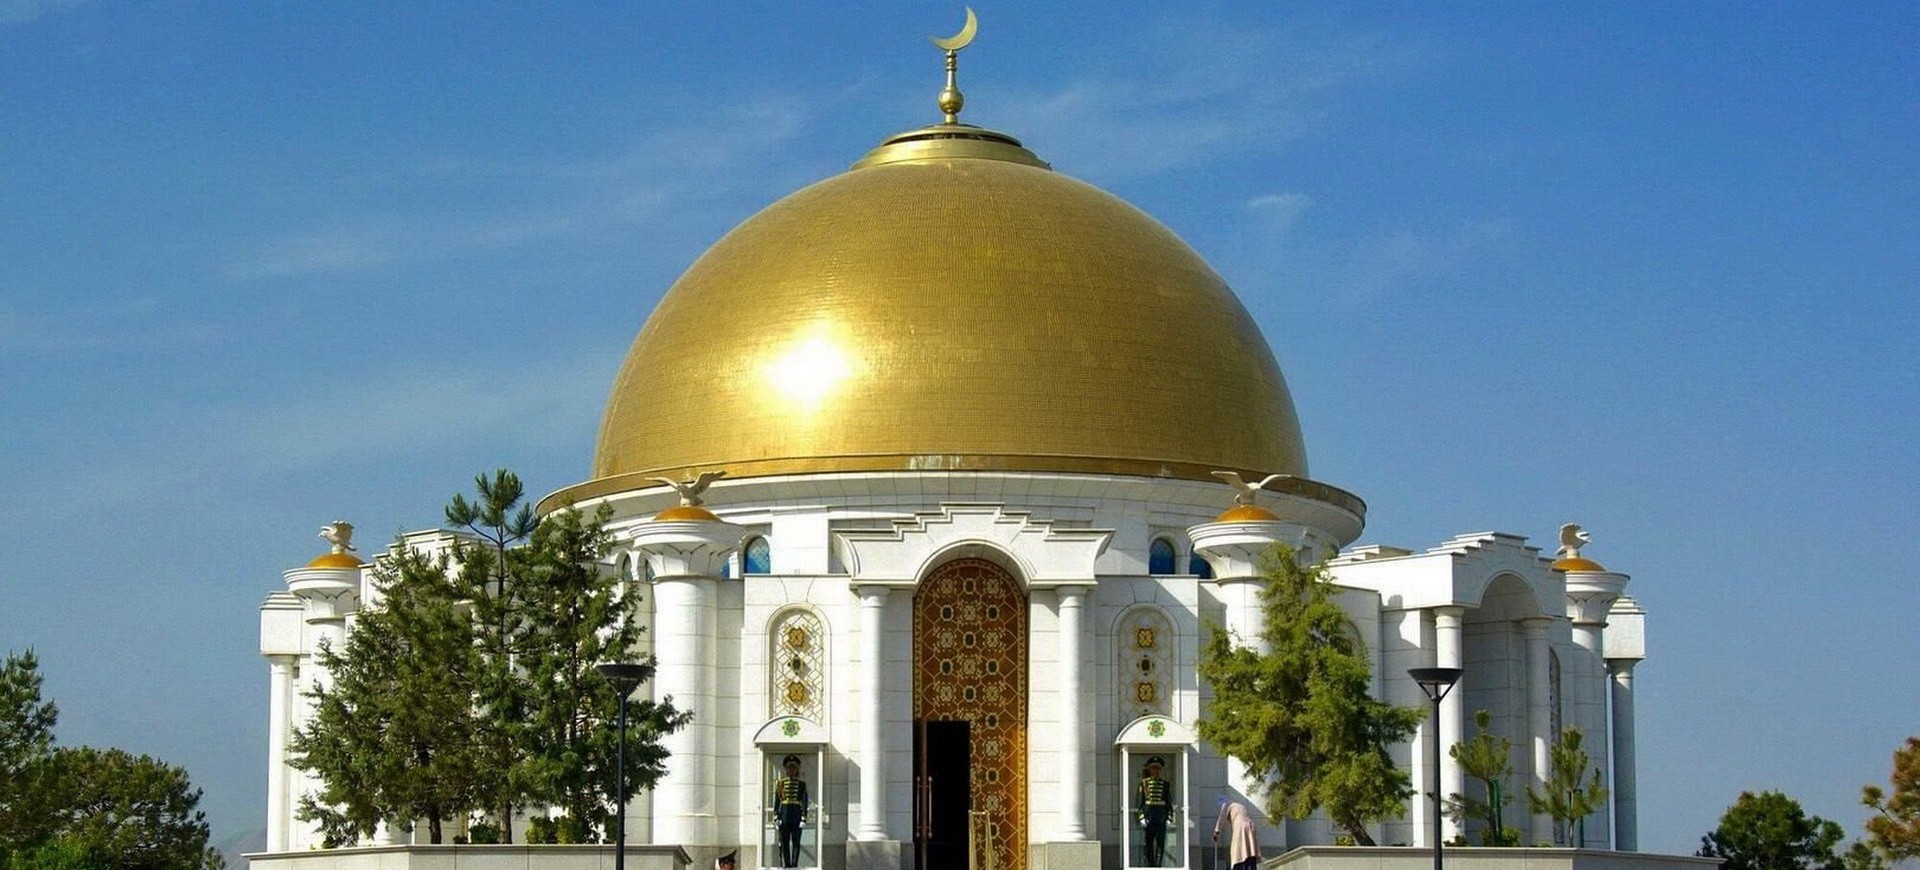 Turkménistan Achqabat Mausolée de Niazov